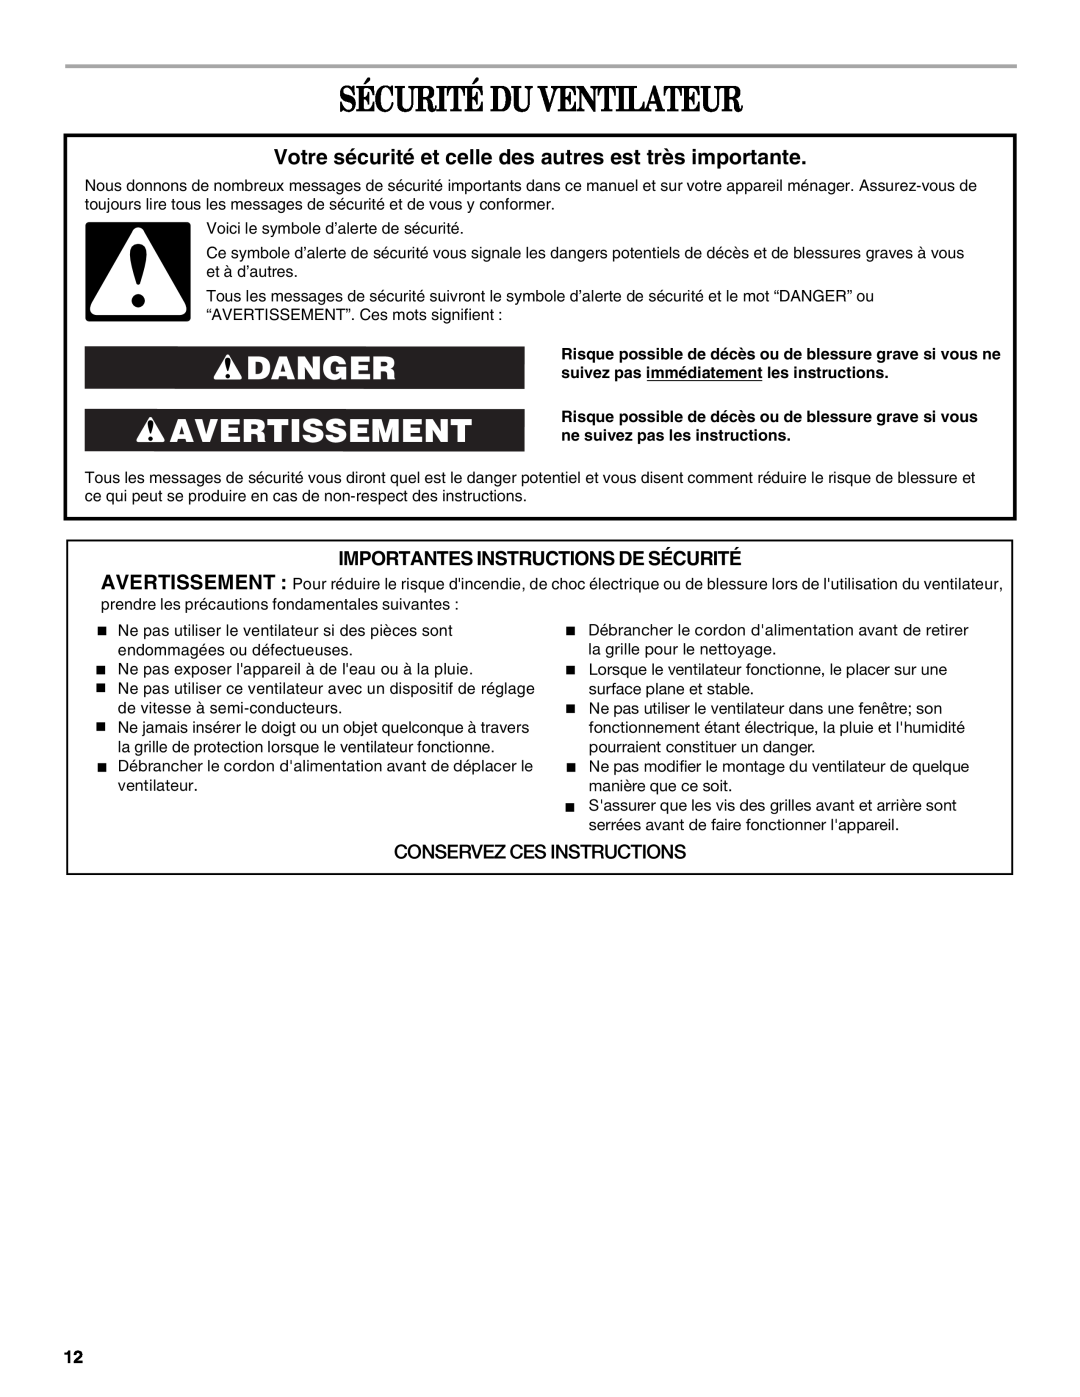 Whirlpool WF4235ER1 manual Sécurité Du Ventilateur, Danger Avertissement, Importantes Instructions De Sécurité 